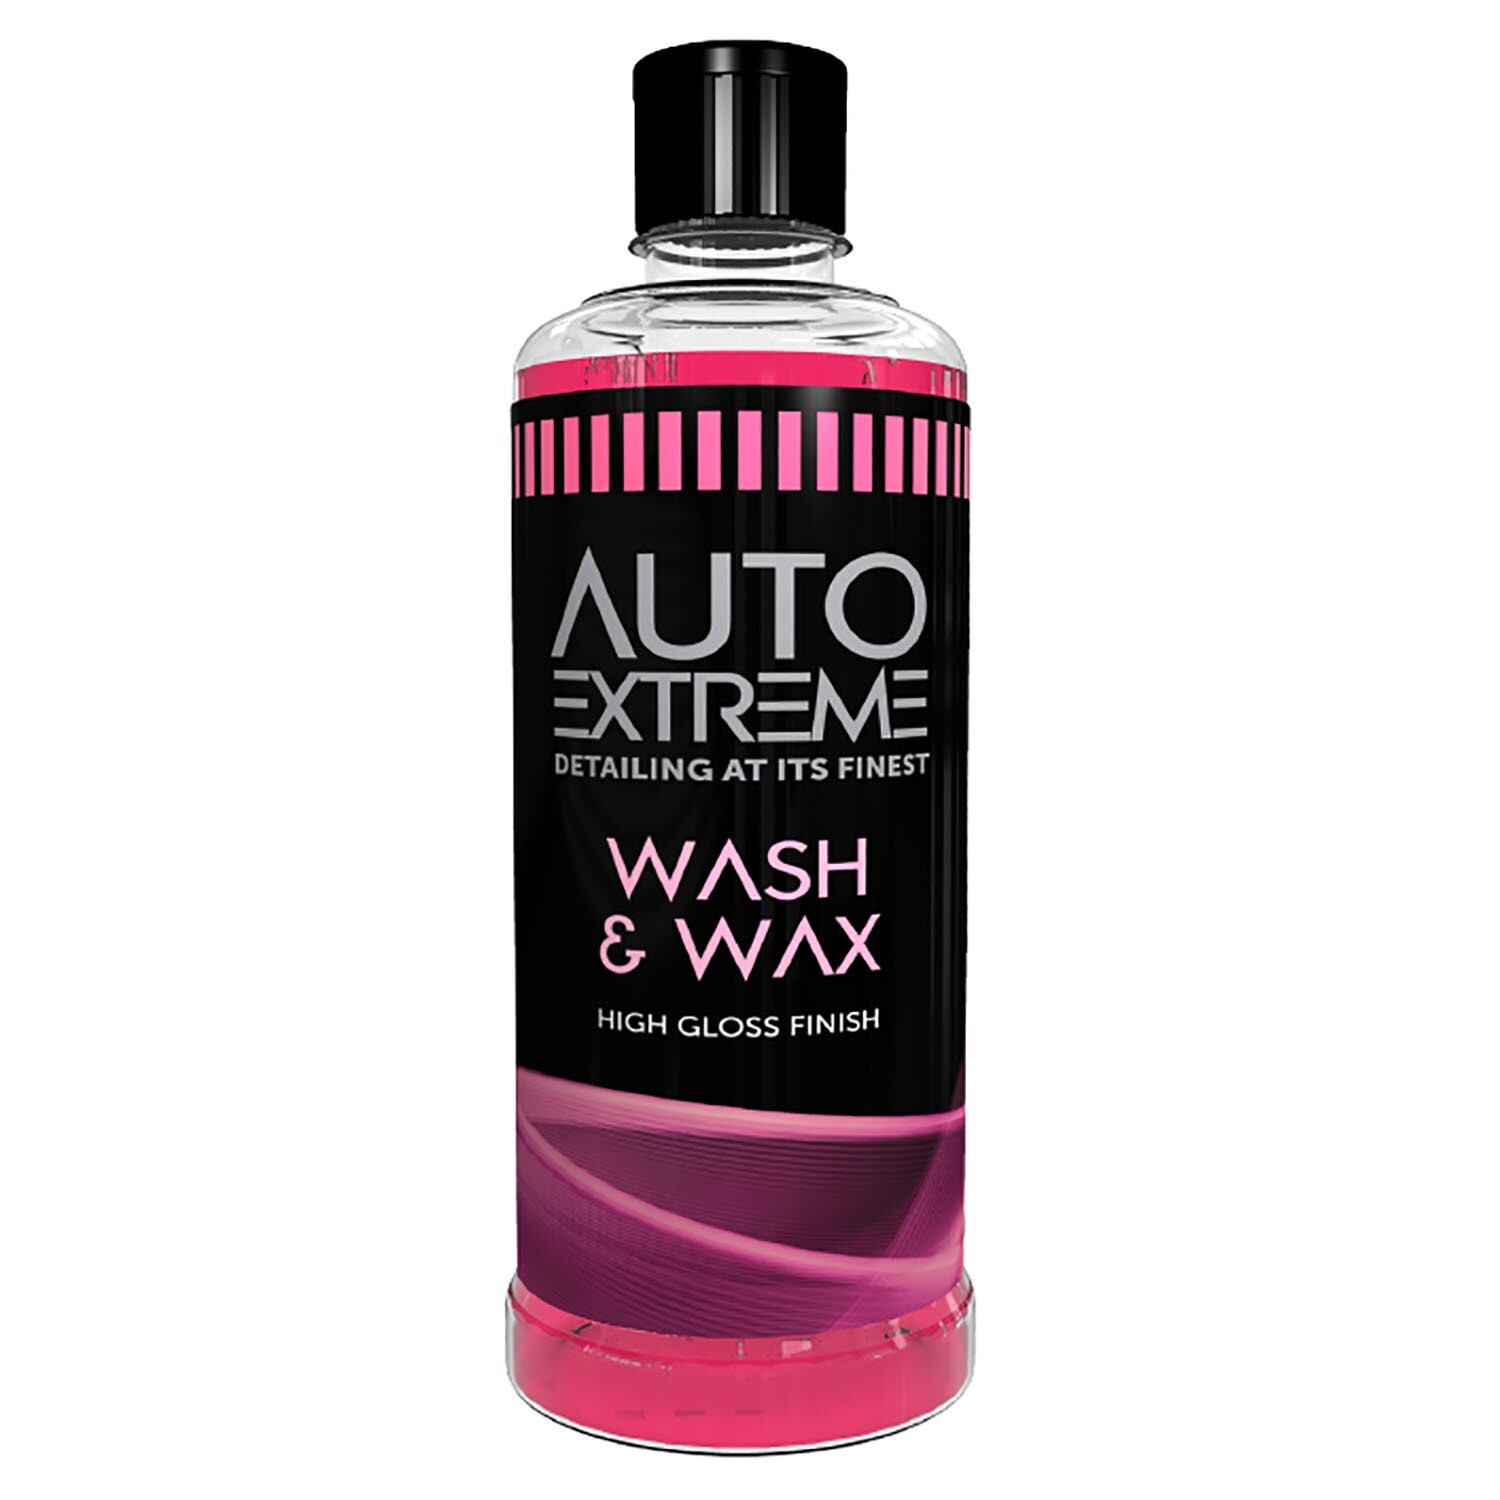 Auto Extreme Wash and Wax Image